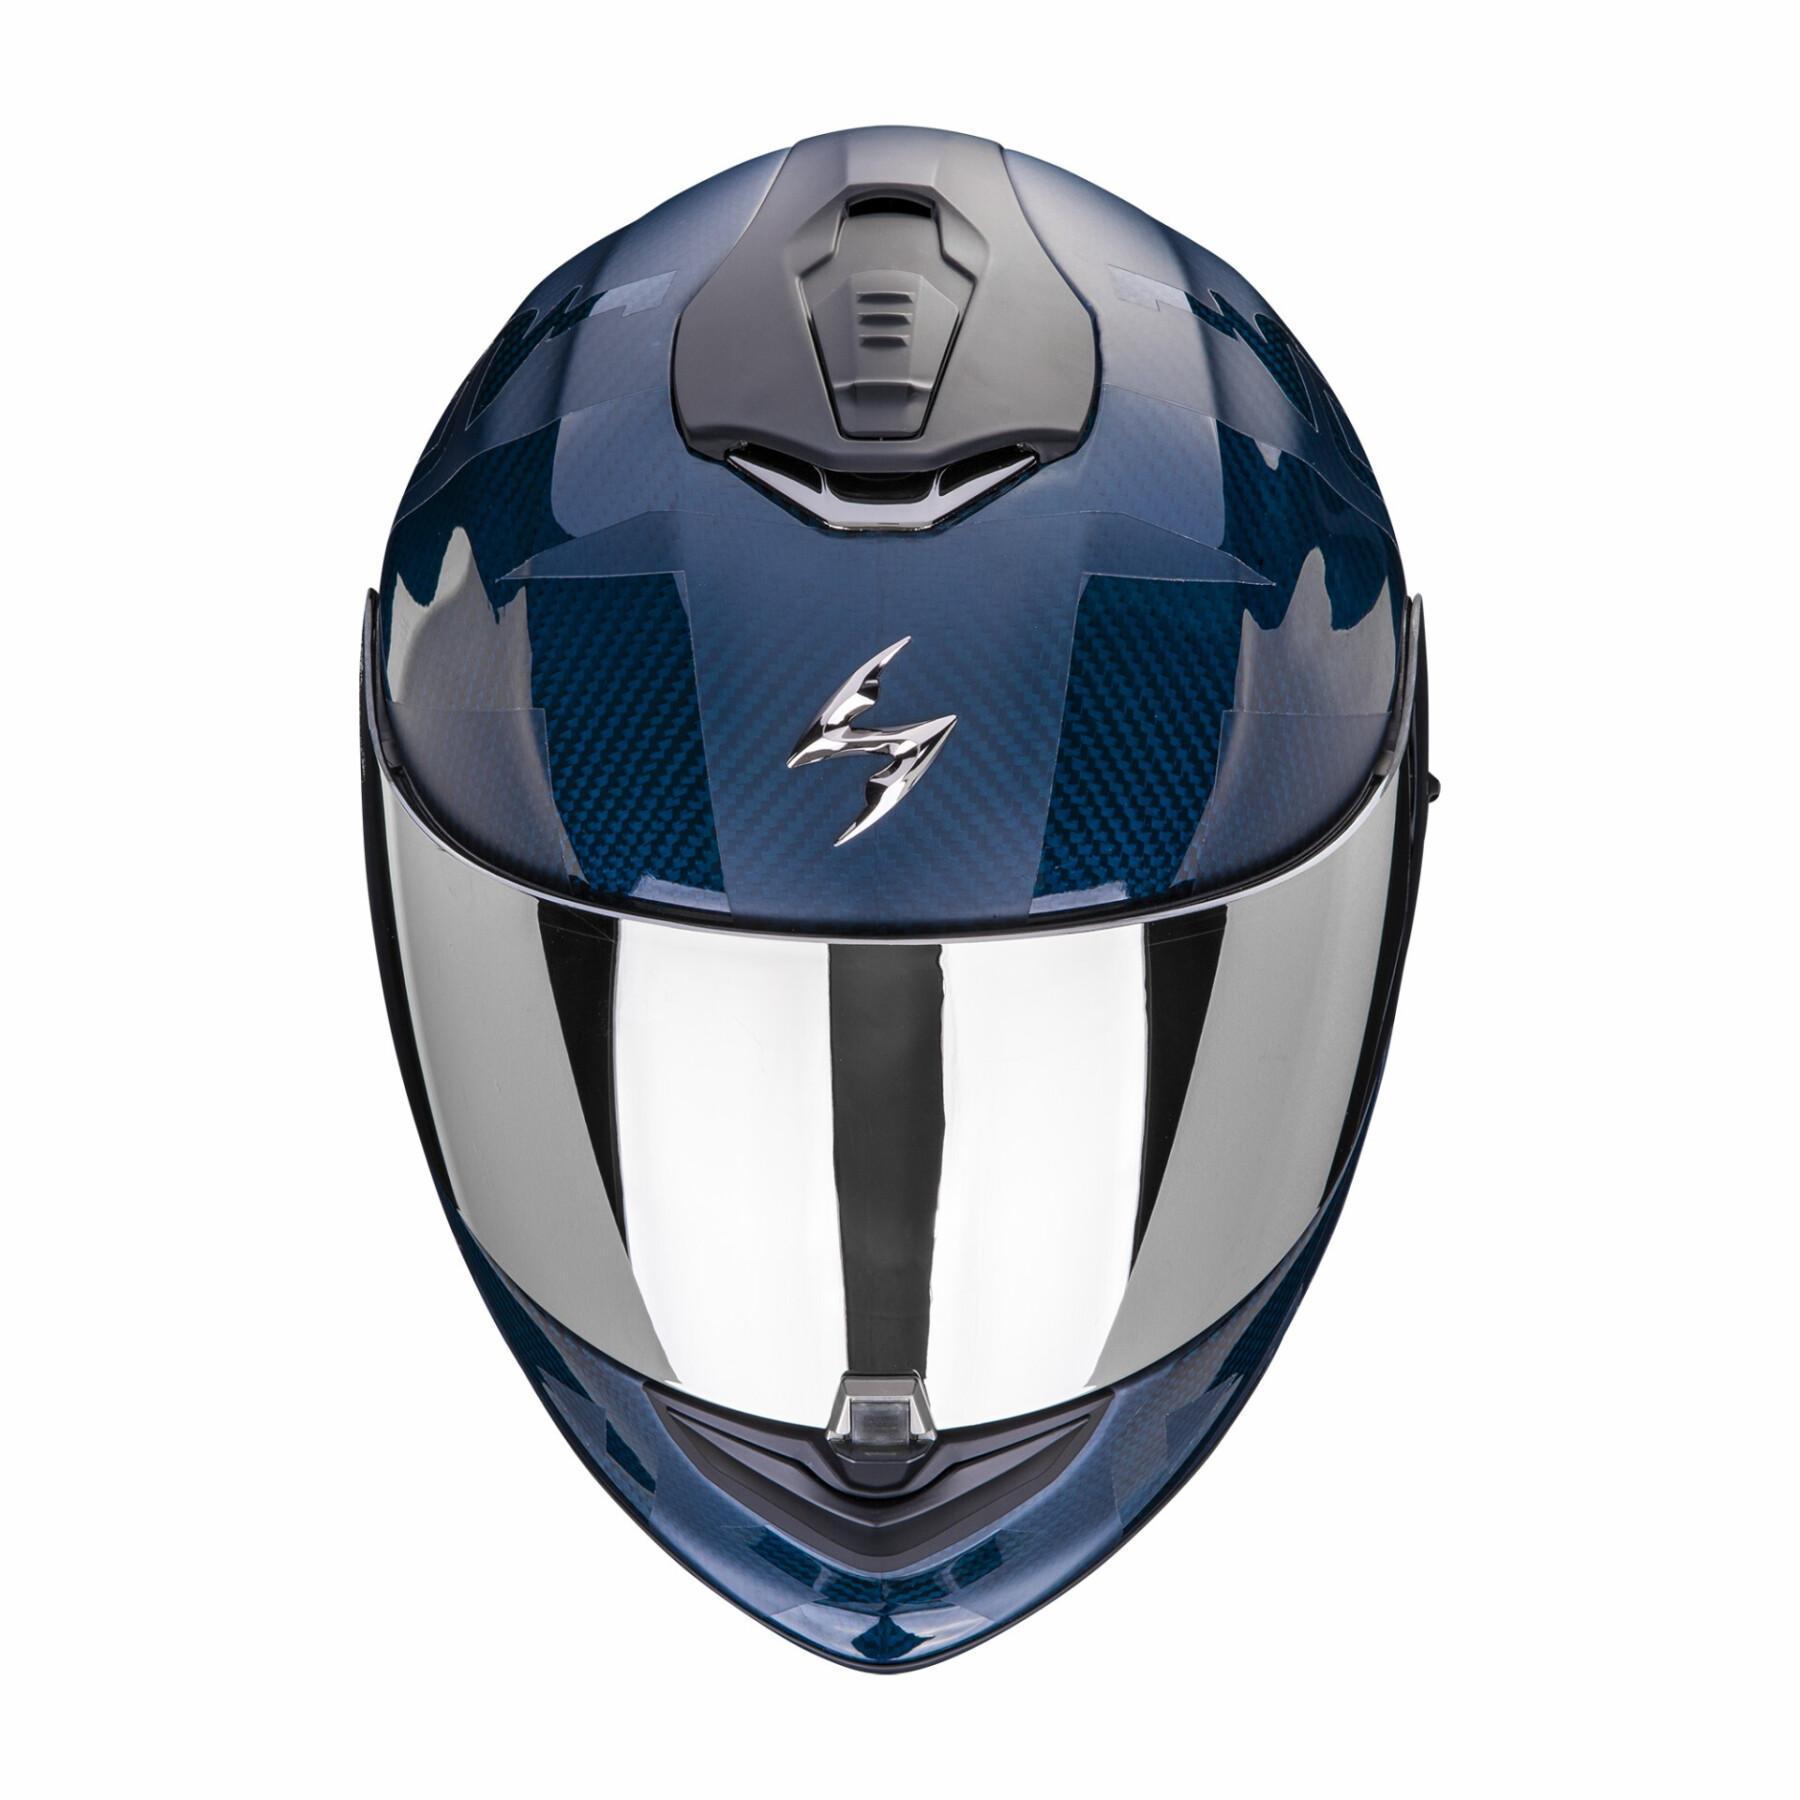 Kask motocyklowy z pełną twarzą Scorpion Exo-1400 Evo Carbon Air Cerebro ECE 22-06